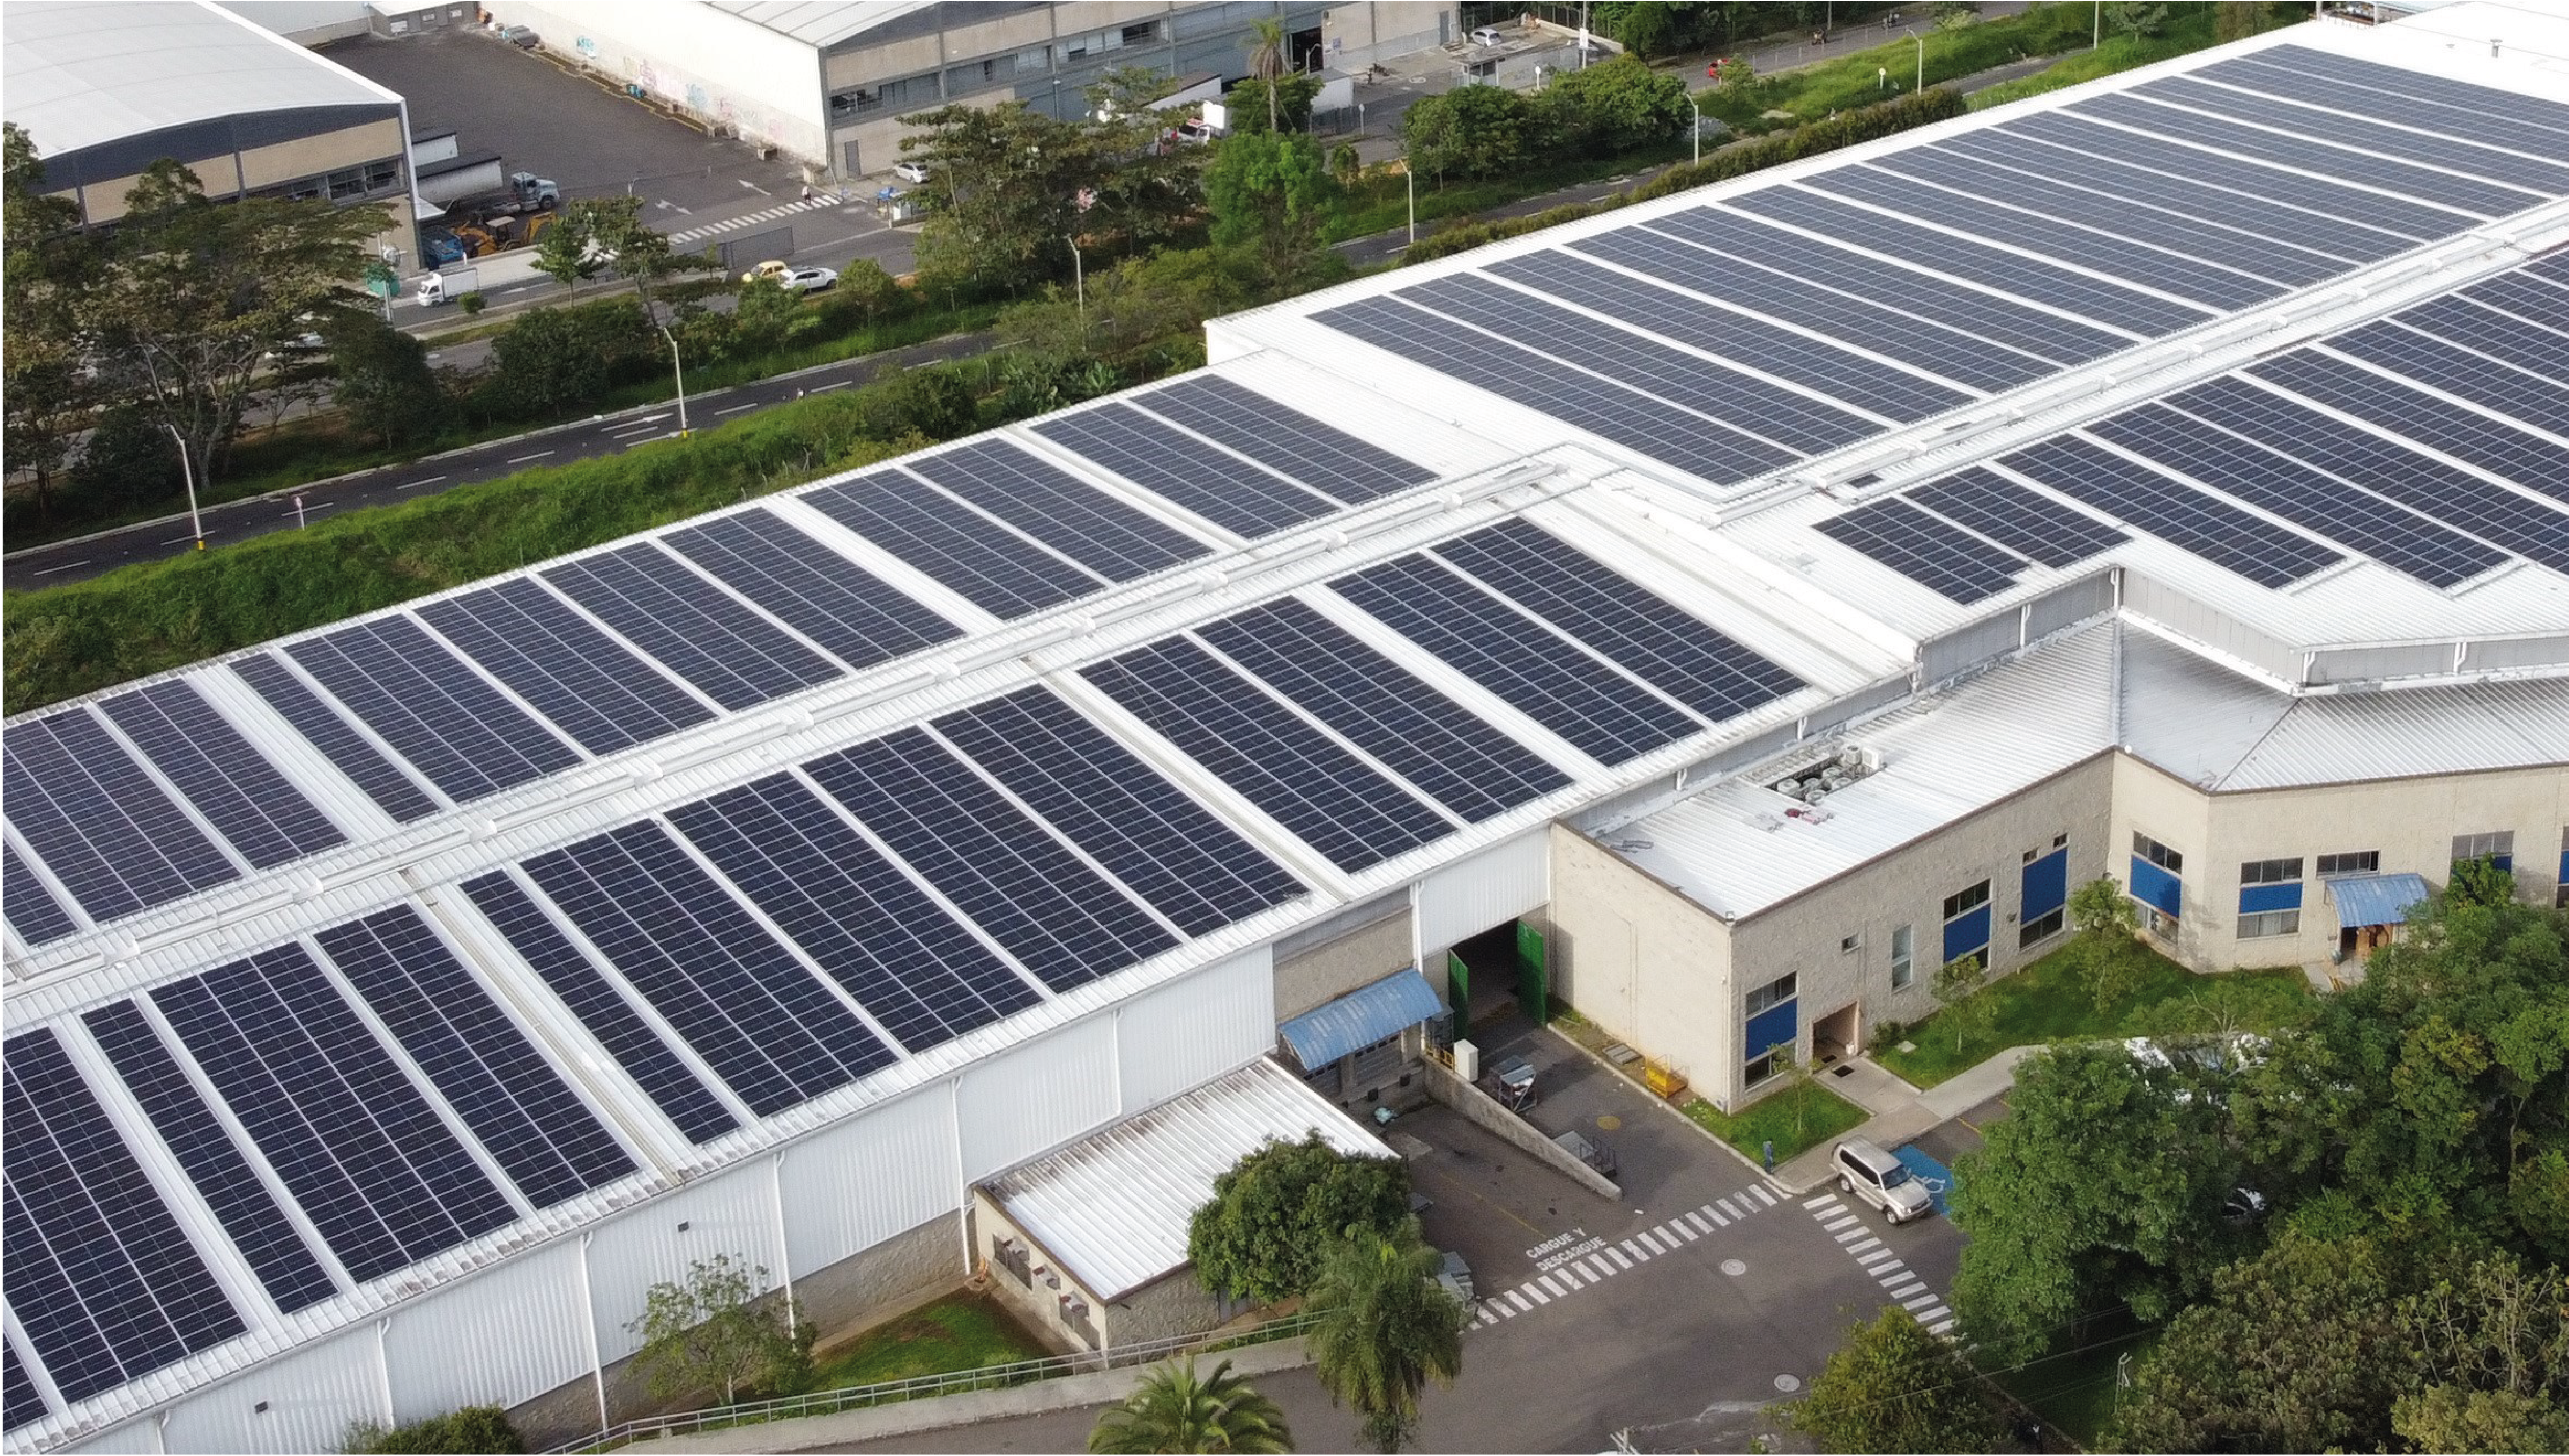 Edificio Corporativo Ecomac Empresas - Proyectos Energía Solar, Ecoi.